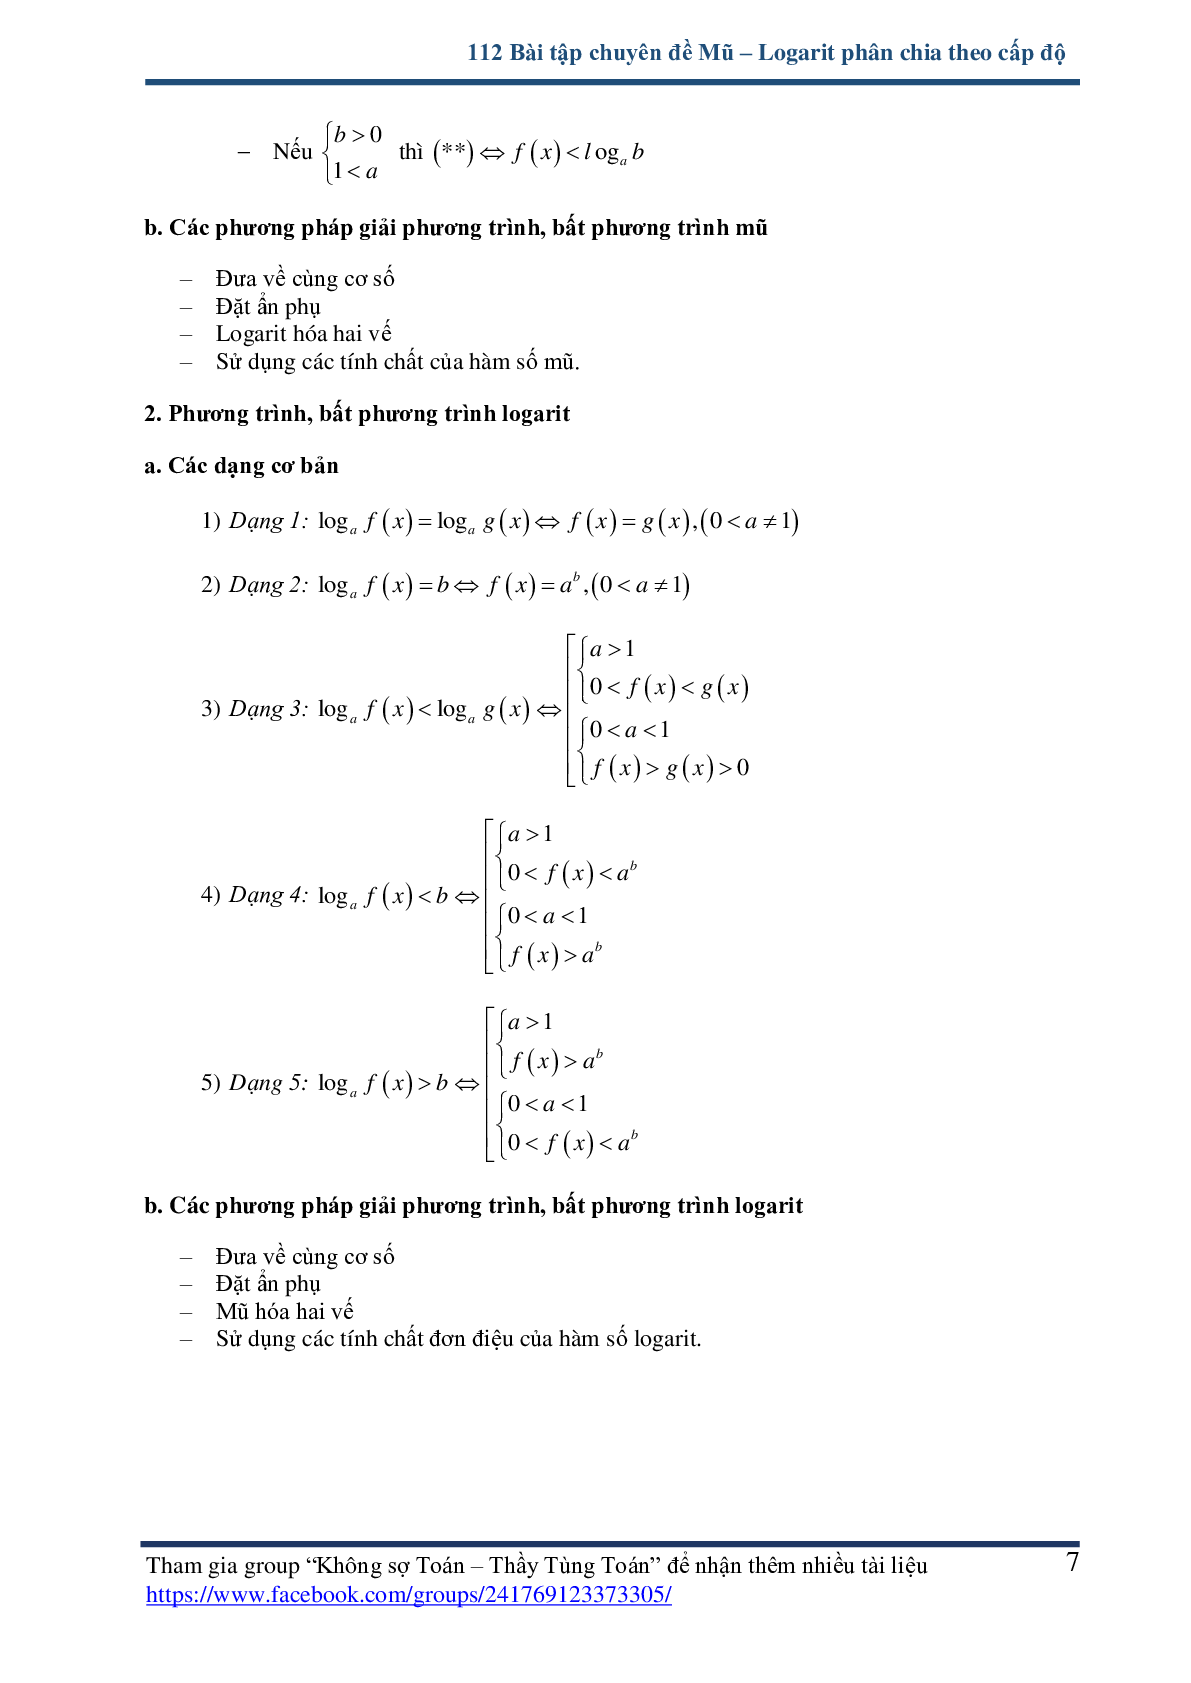 112 bài tập chuyên đề mũ và logarit - có lời giải chi tiết (trang 7)